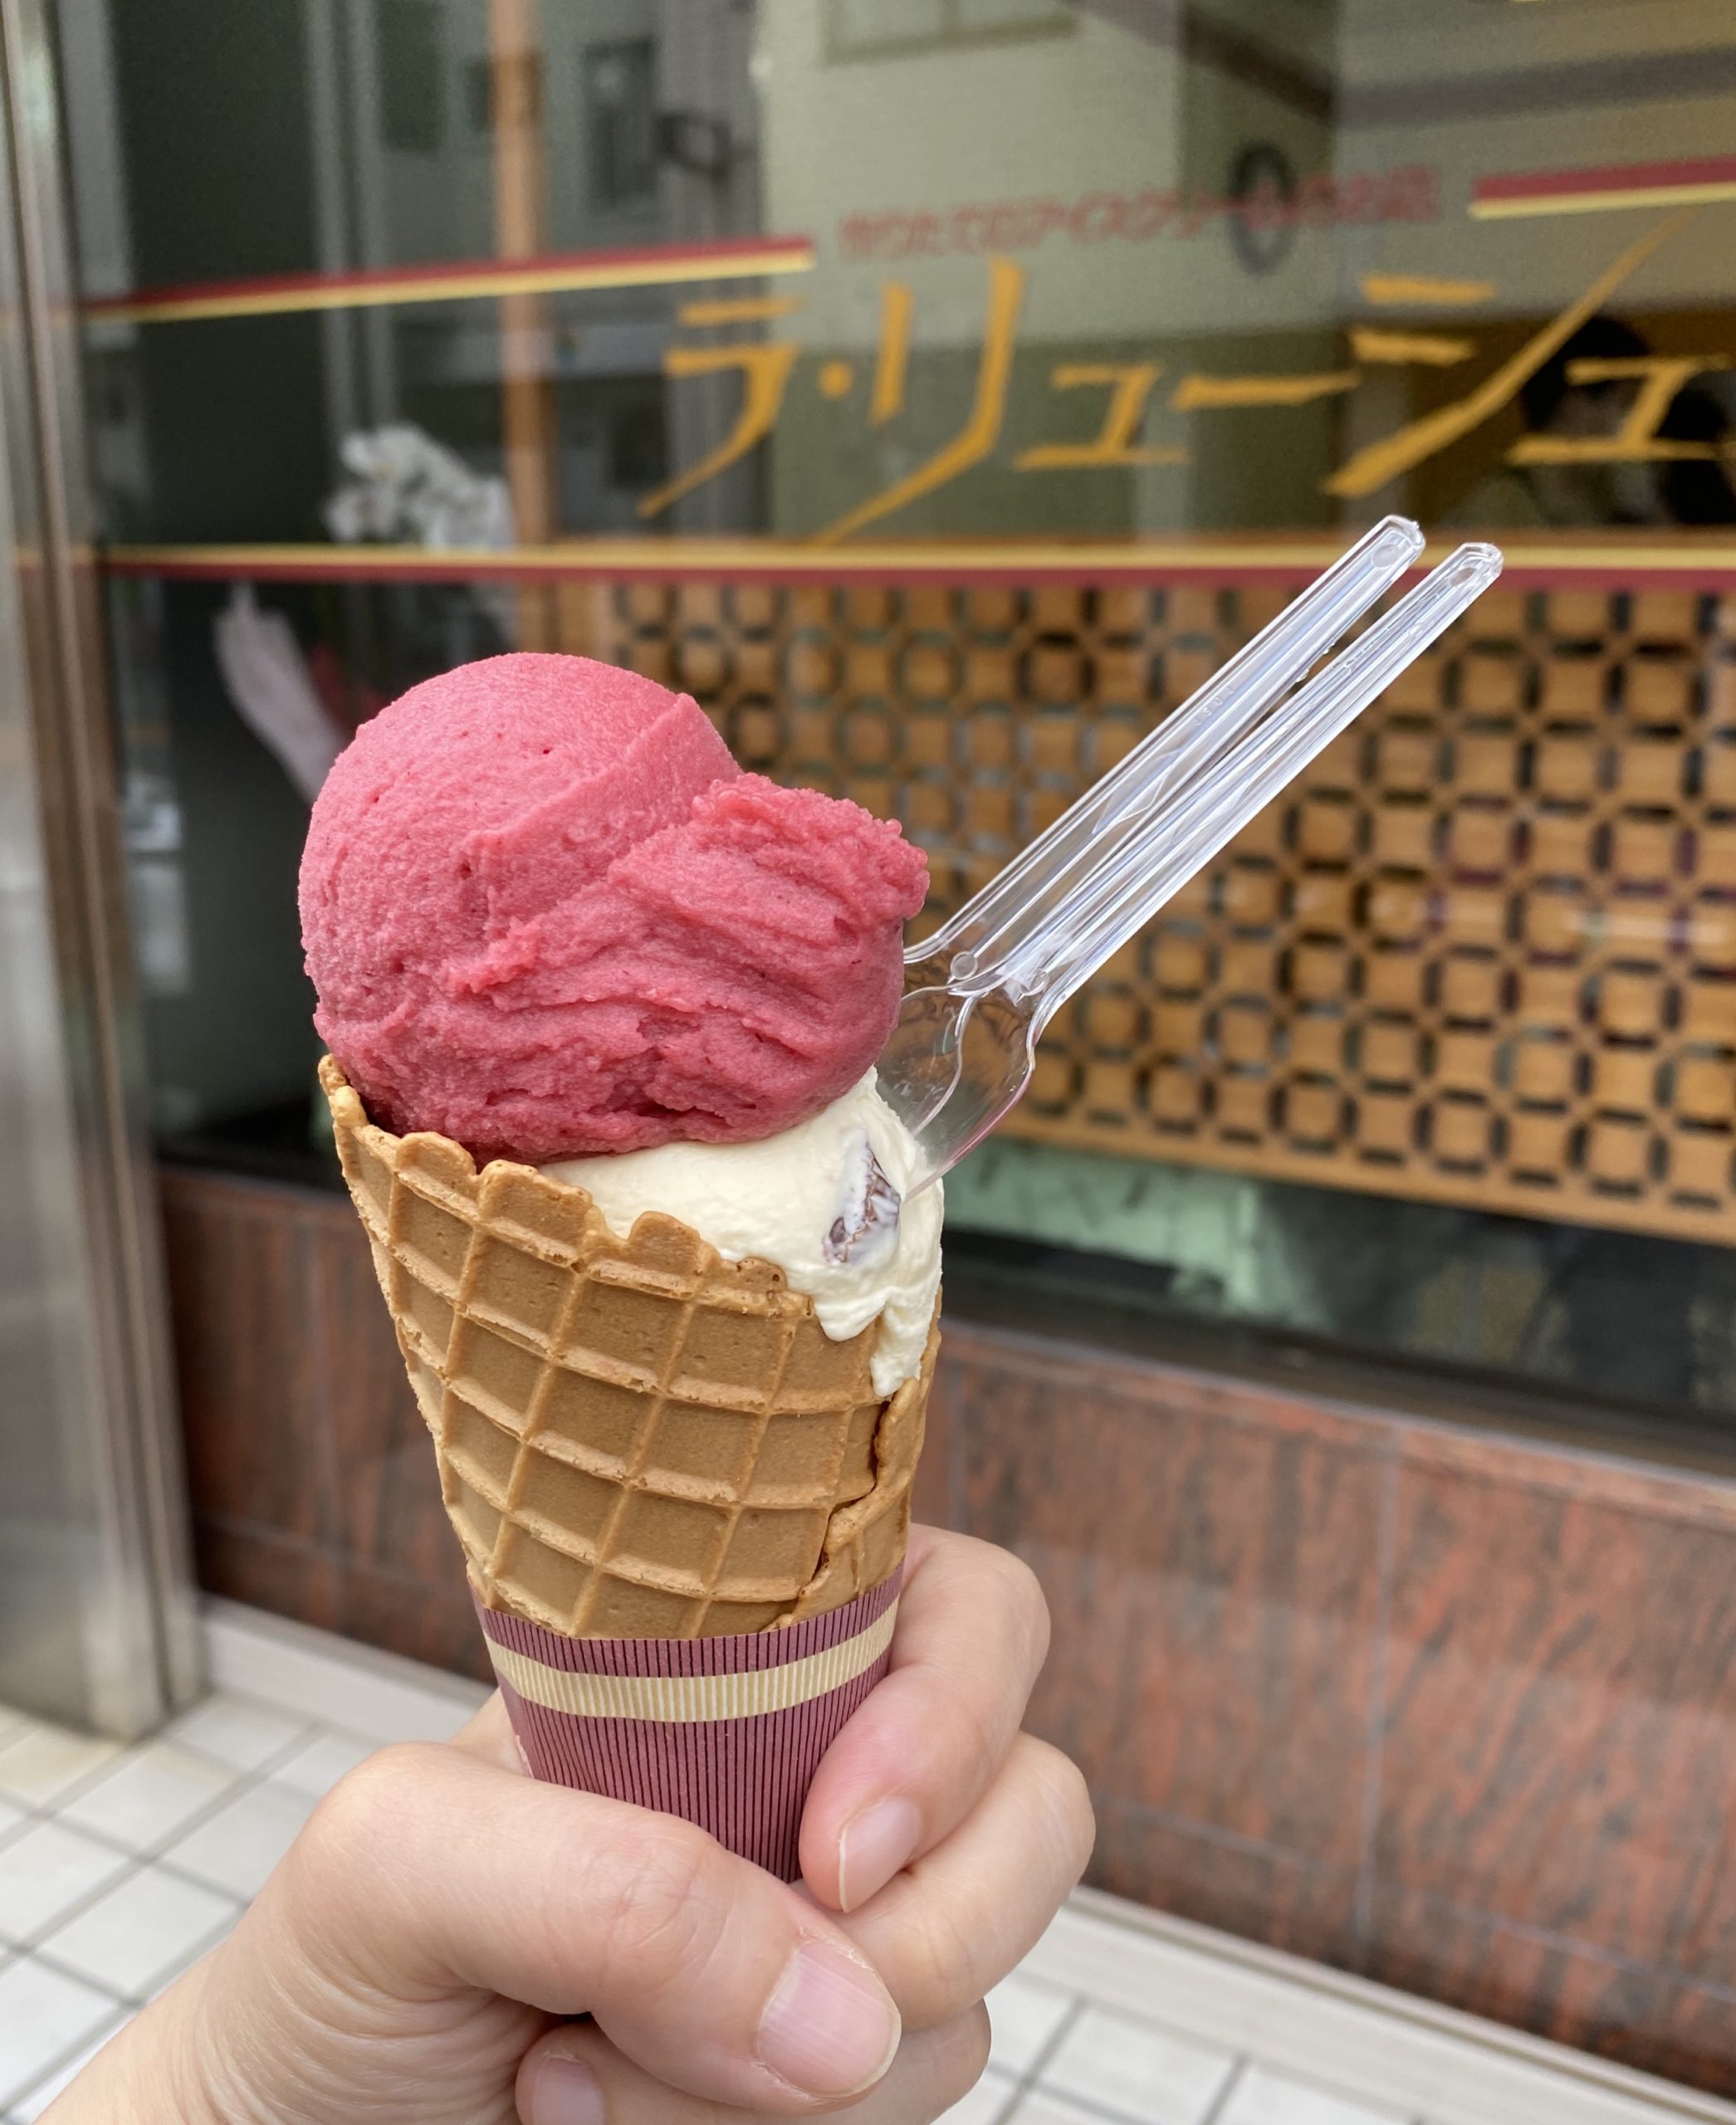 九品仏 自由が丘 のアイスクリーム店 La Rushe ラ リューシェ で 実食レポ Topinade